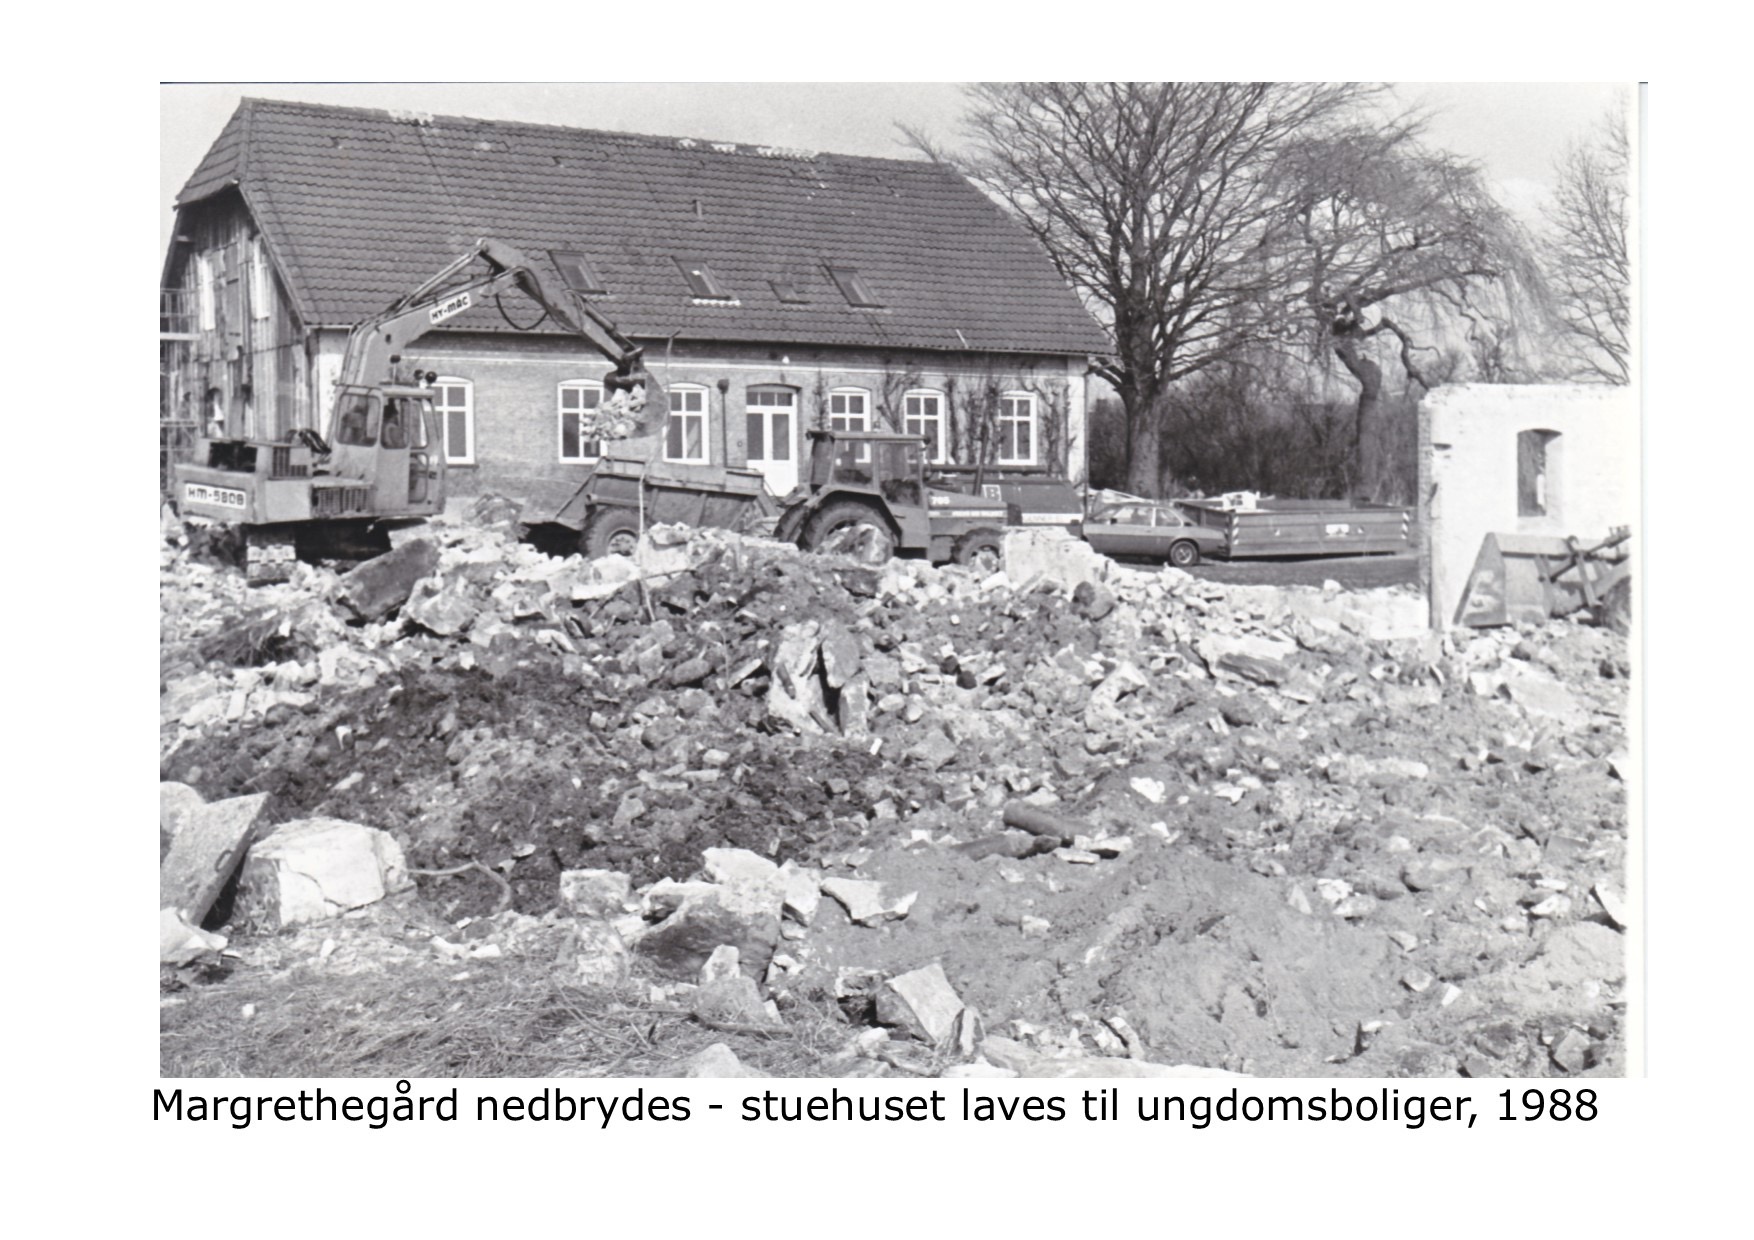 Margrethegård nebrydes stuehuset laves til ungdomsboliger - 1988 